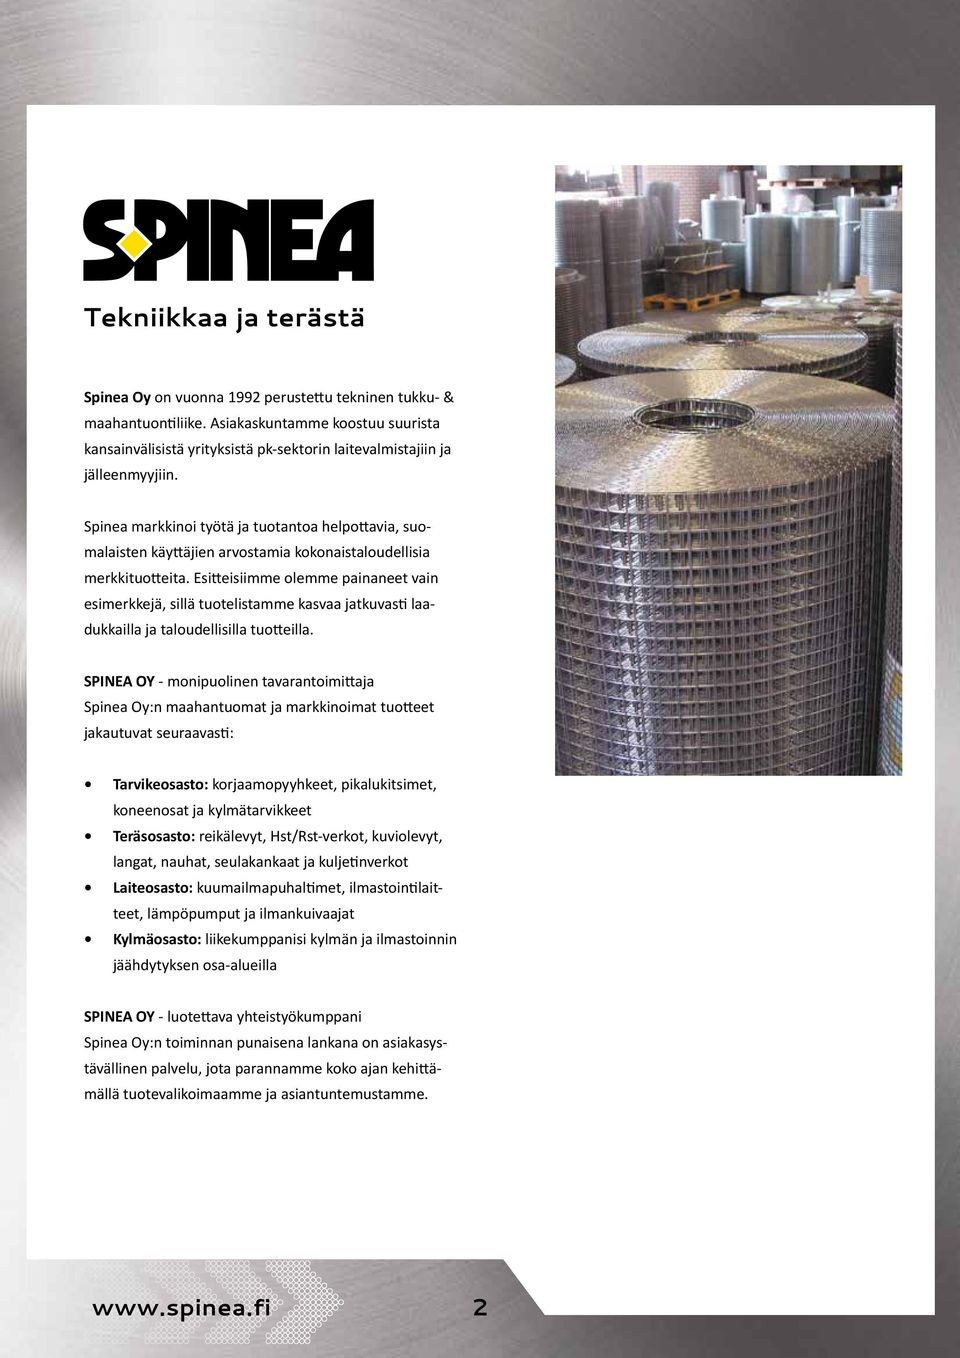 Spinea markkinoi työtä ja tuotantoa helpottavia, suomalaisten käyttäjien arvostamia kokonaistaloudellisia merkkituotteita.